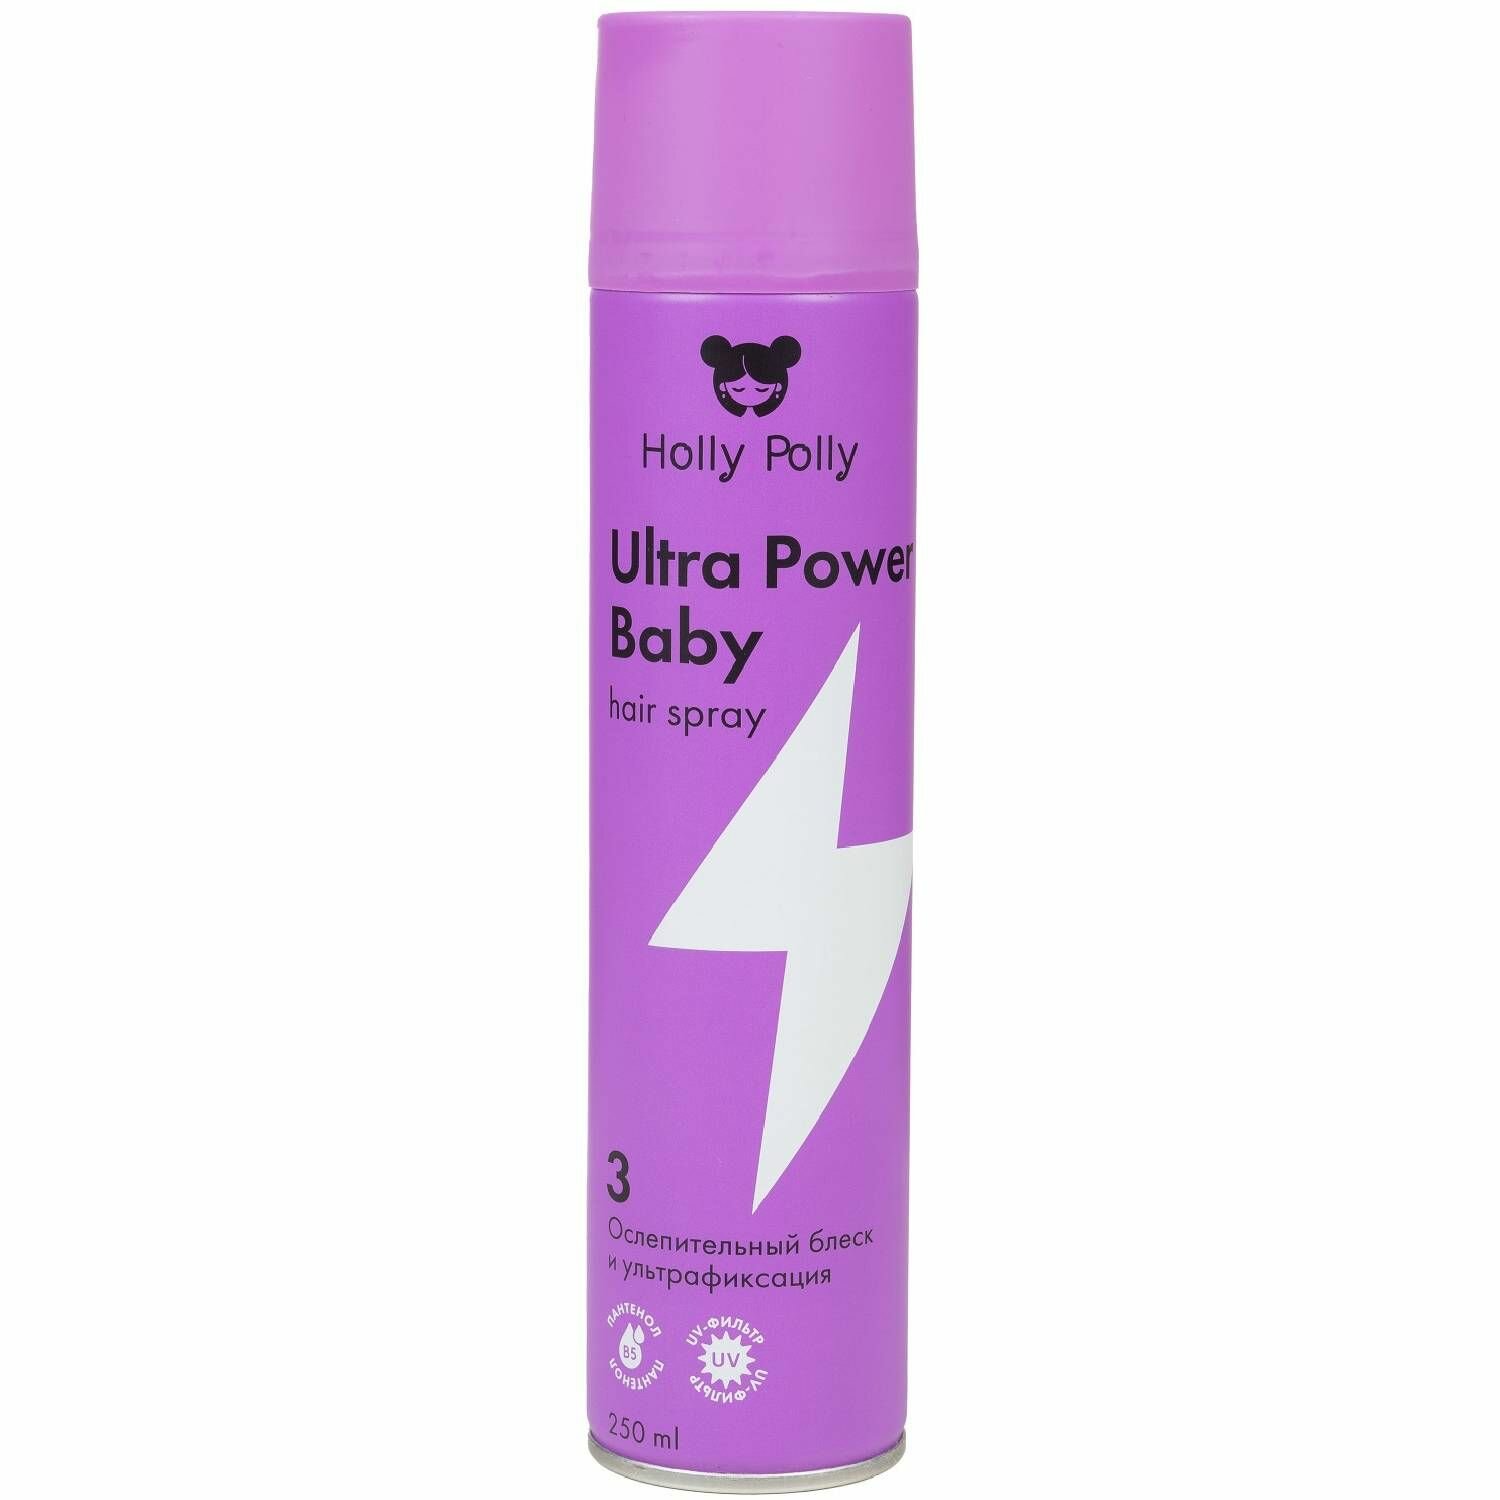 Holly Polly Лак для волос Ultra Power Baby Ослепительный блеск и ультрафиксация, 250 мл